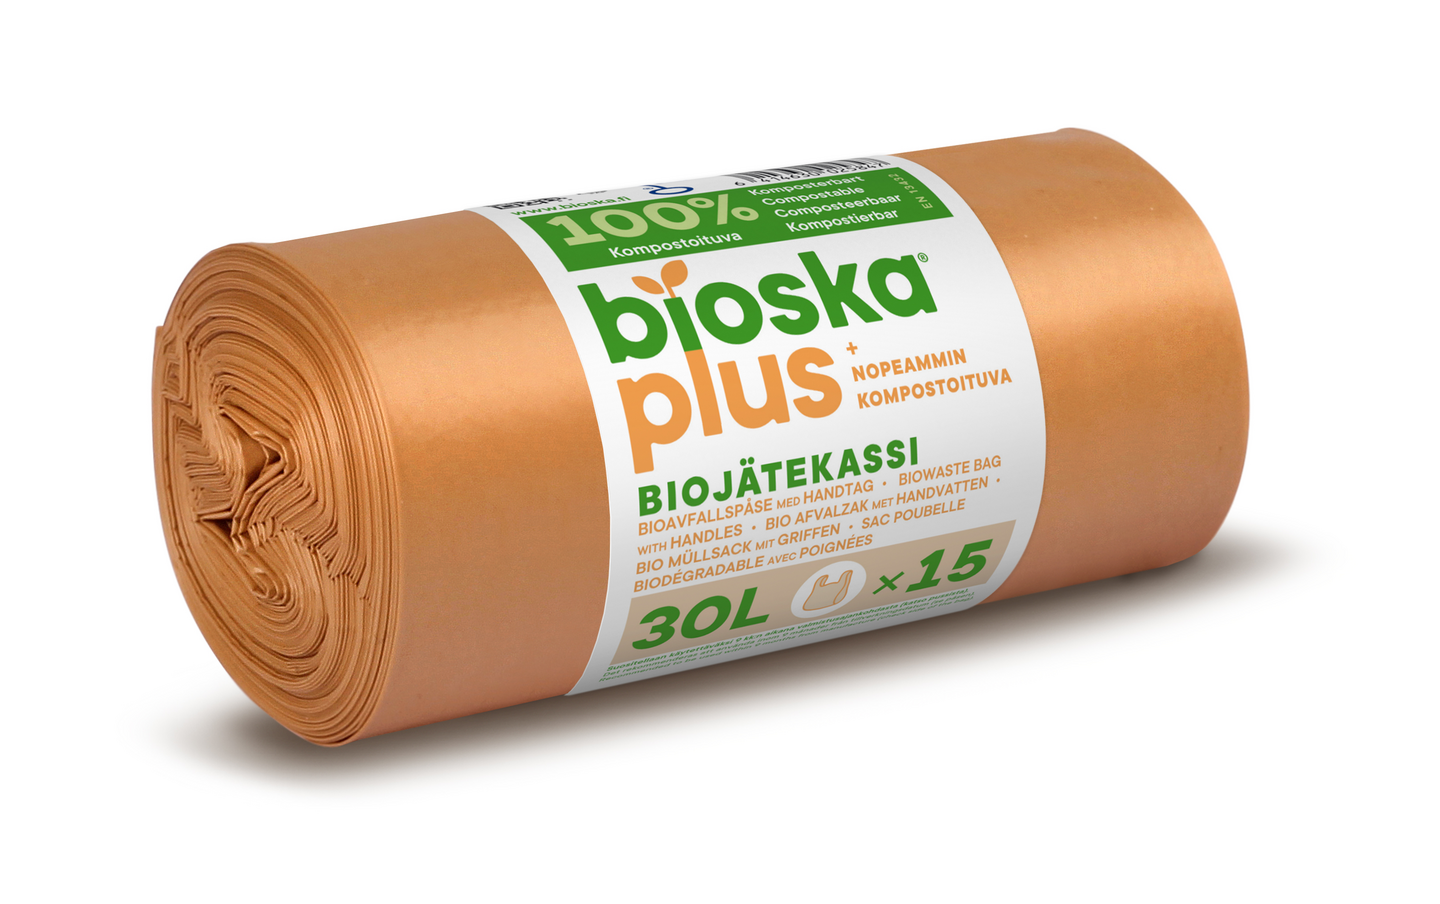 Sanka-Bioska+ biojätekassi 30L 15kpl ruskea 480x550mm